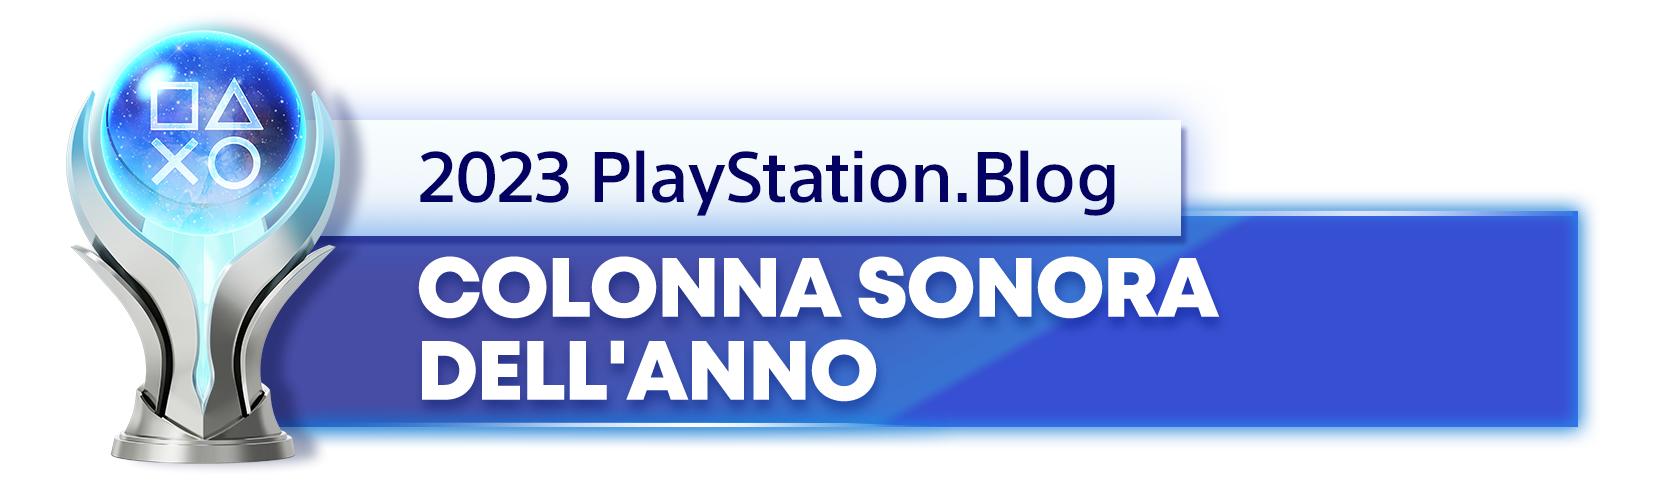  "Vincitore del trofeo platino per il titolo di Colonna sonora dell'anno 2023 del PlayStation.Blog"